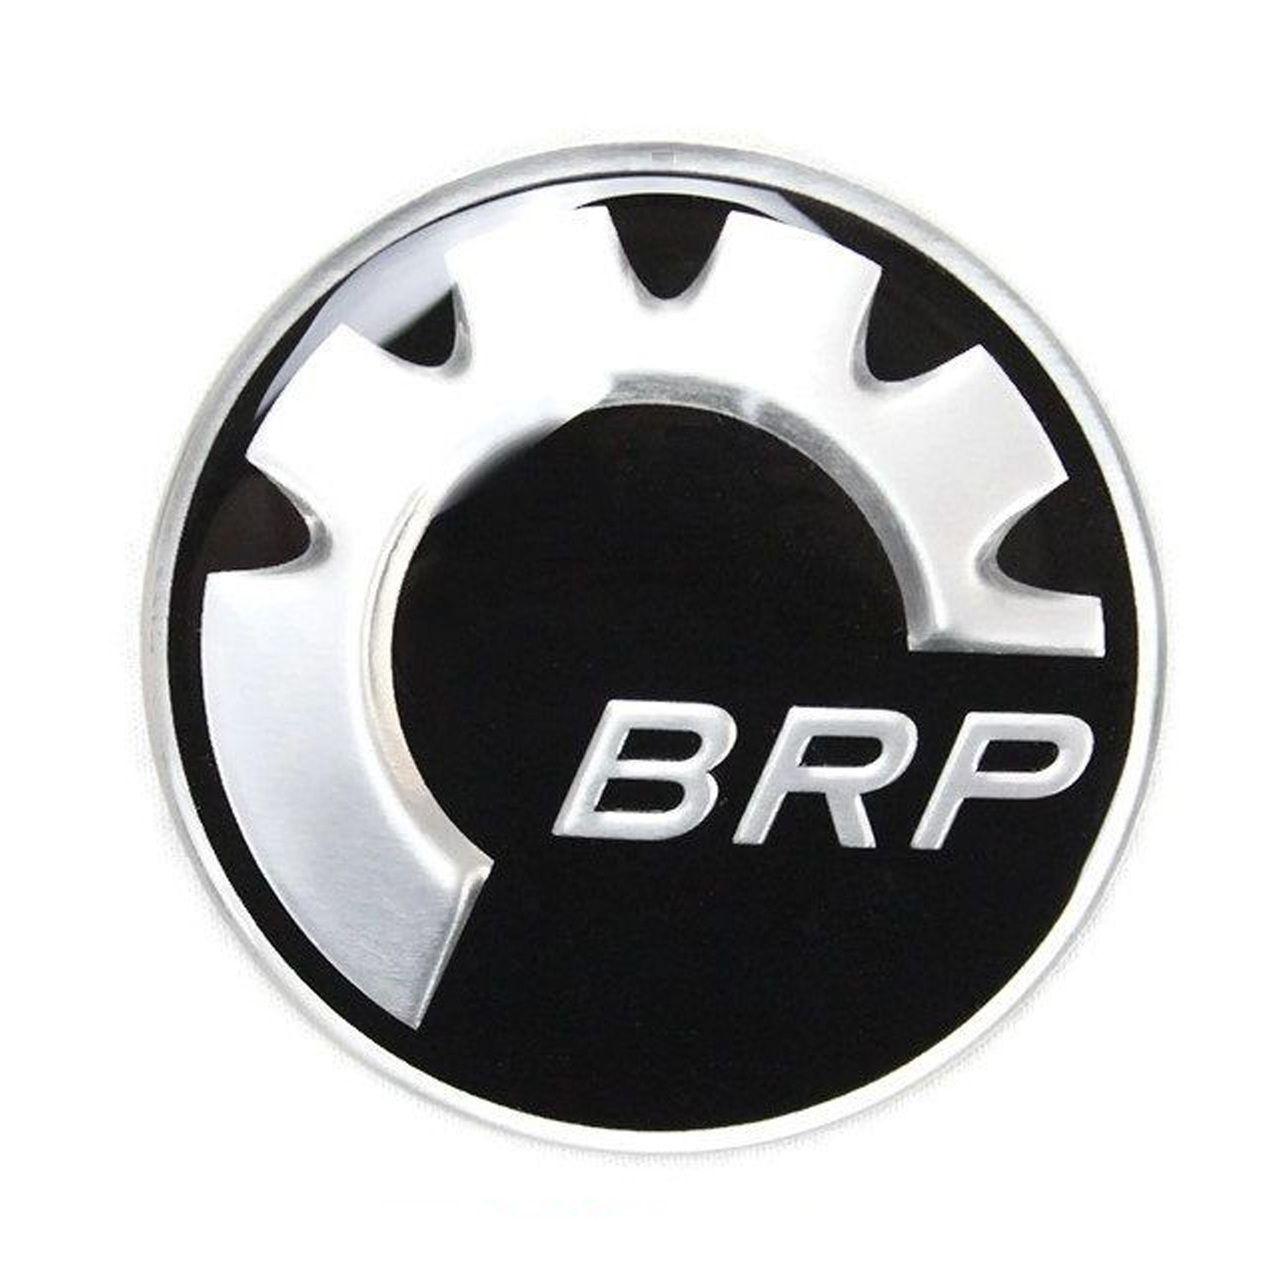 BRP Logo - Ski-Doo Can-Am Sea-Doo New OEM Sprocket BRP Logo Emblem Domed Decal ...